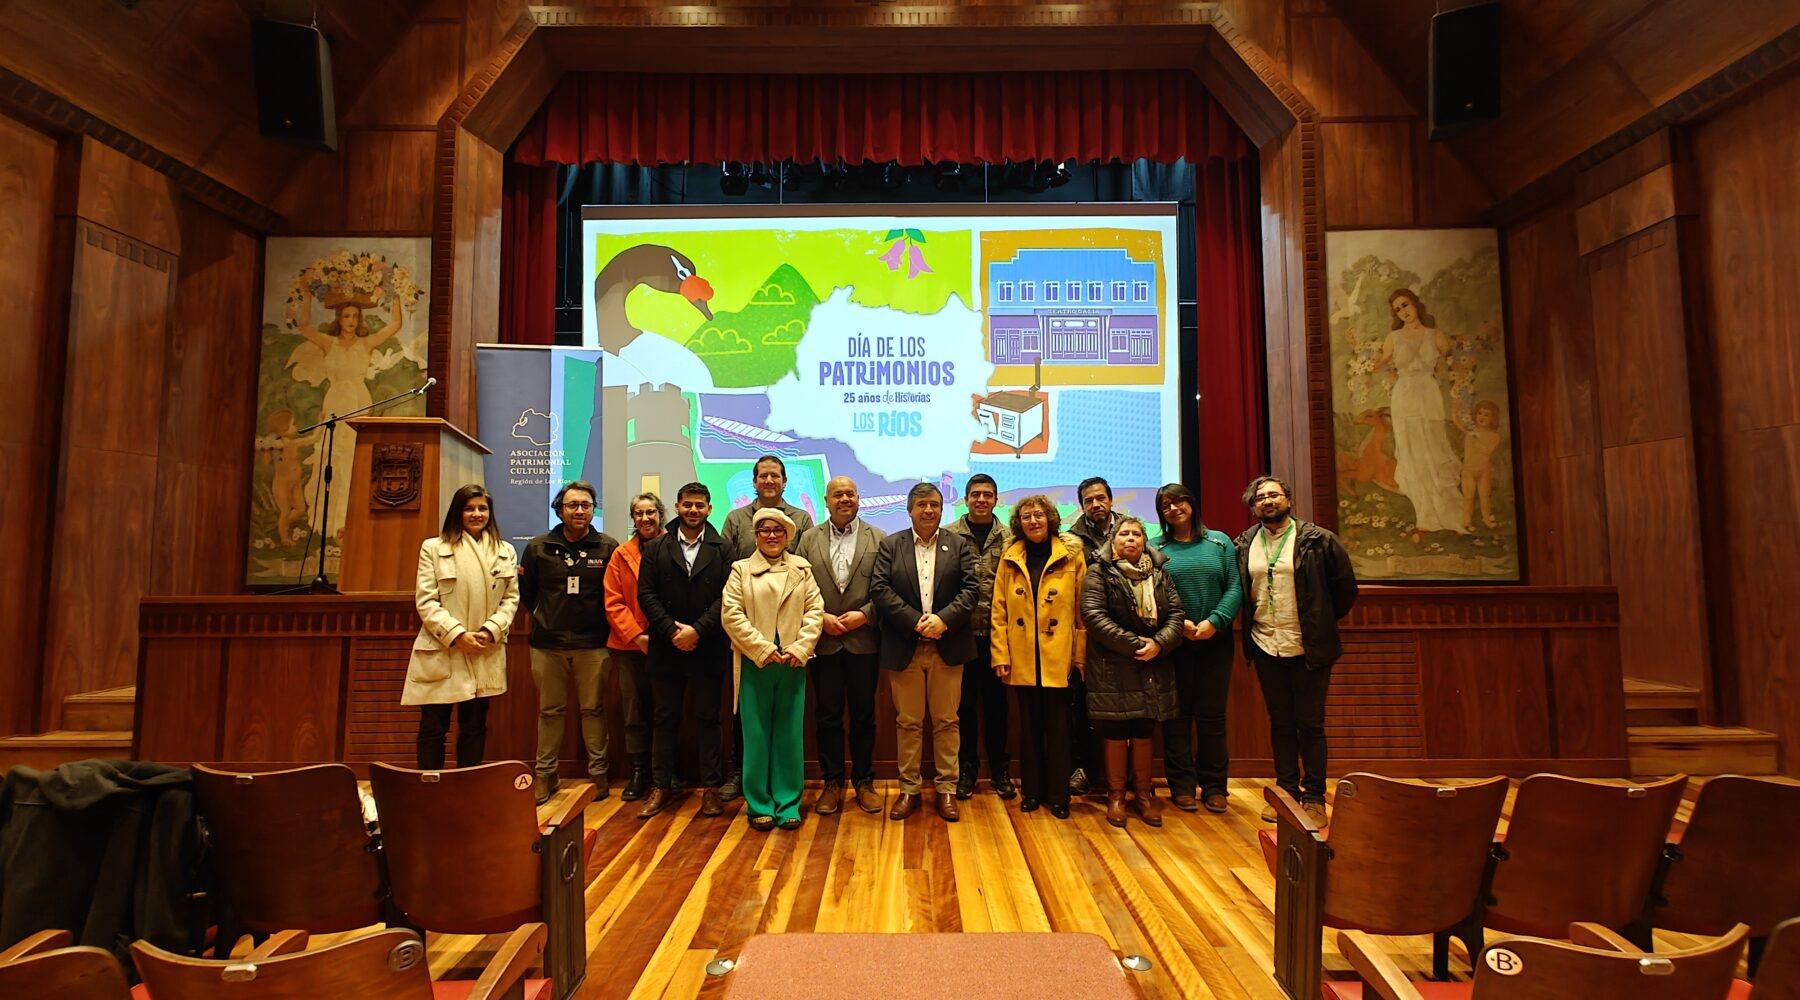 En Lanco efectuaron el lanzamiento de actividades del Día de Los Patrimonios